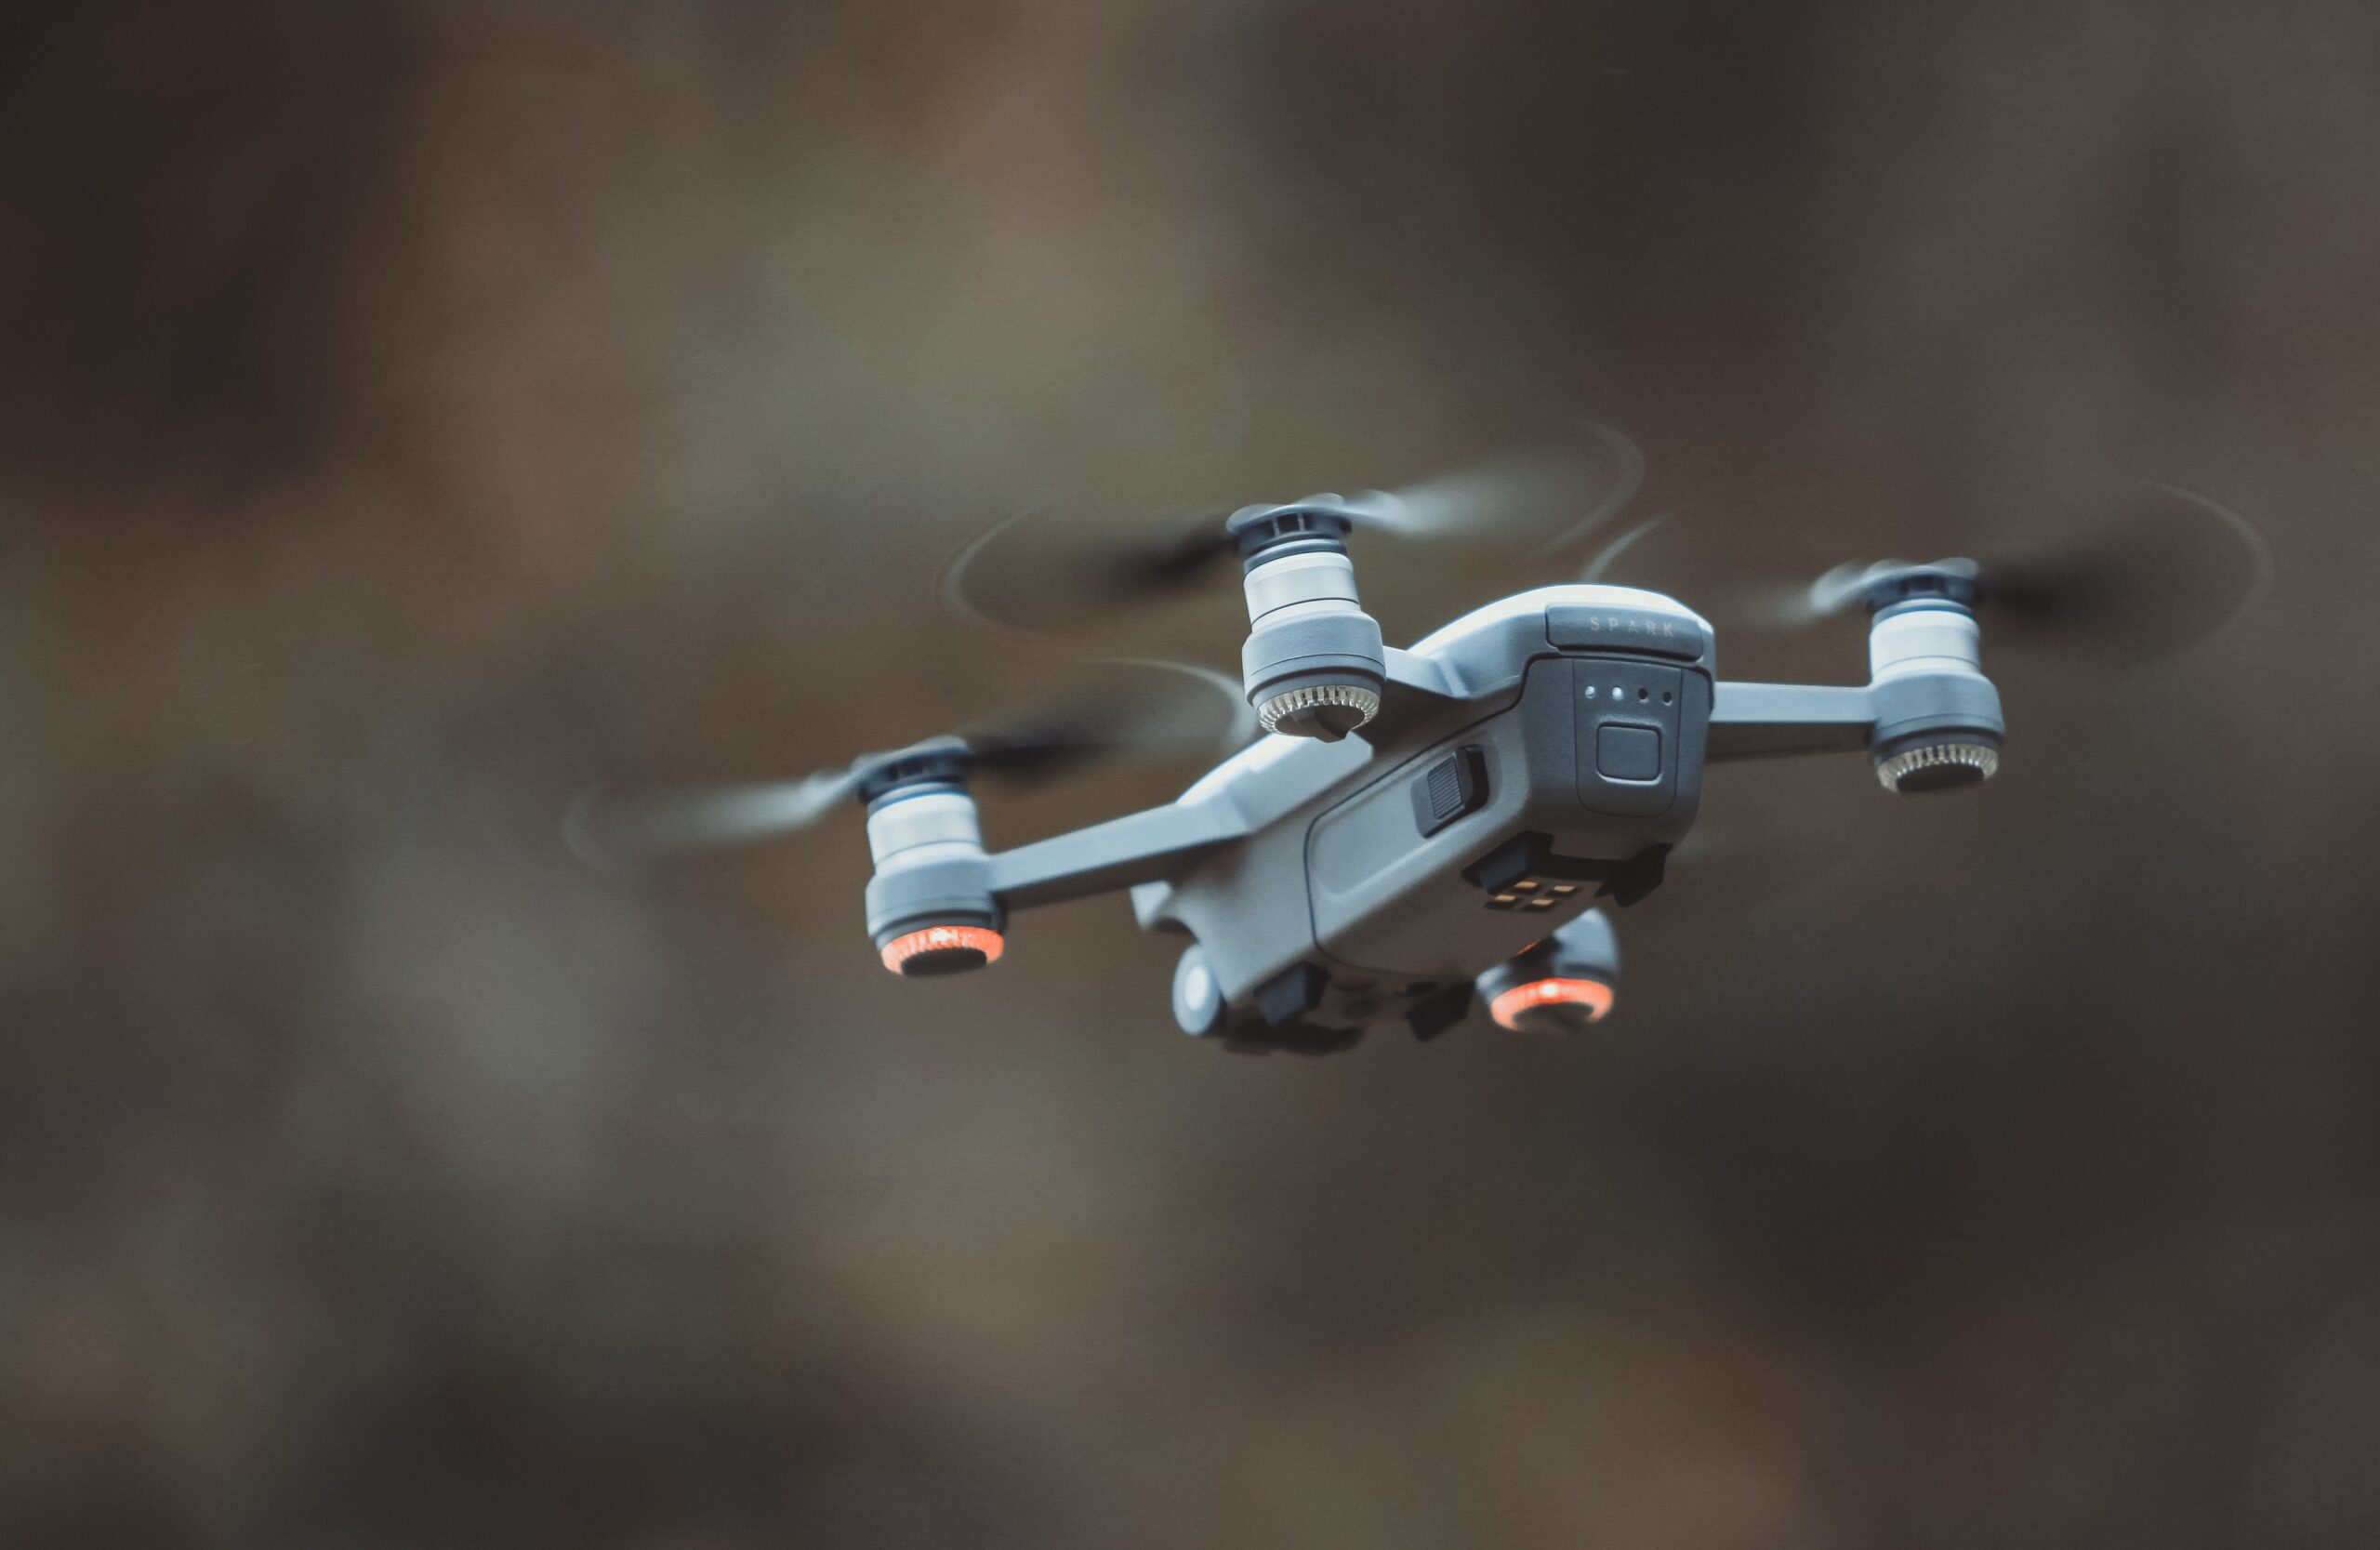 Bezałogowe Drony: Czy Są One Dla Nas Bezpieczne?